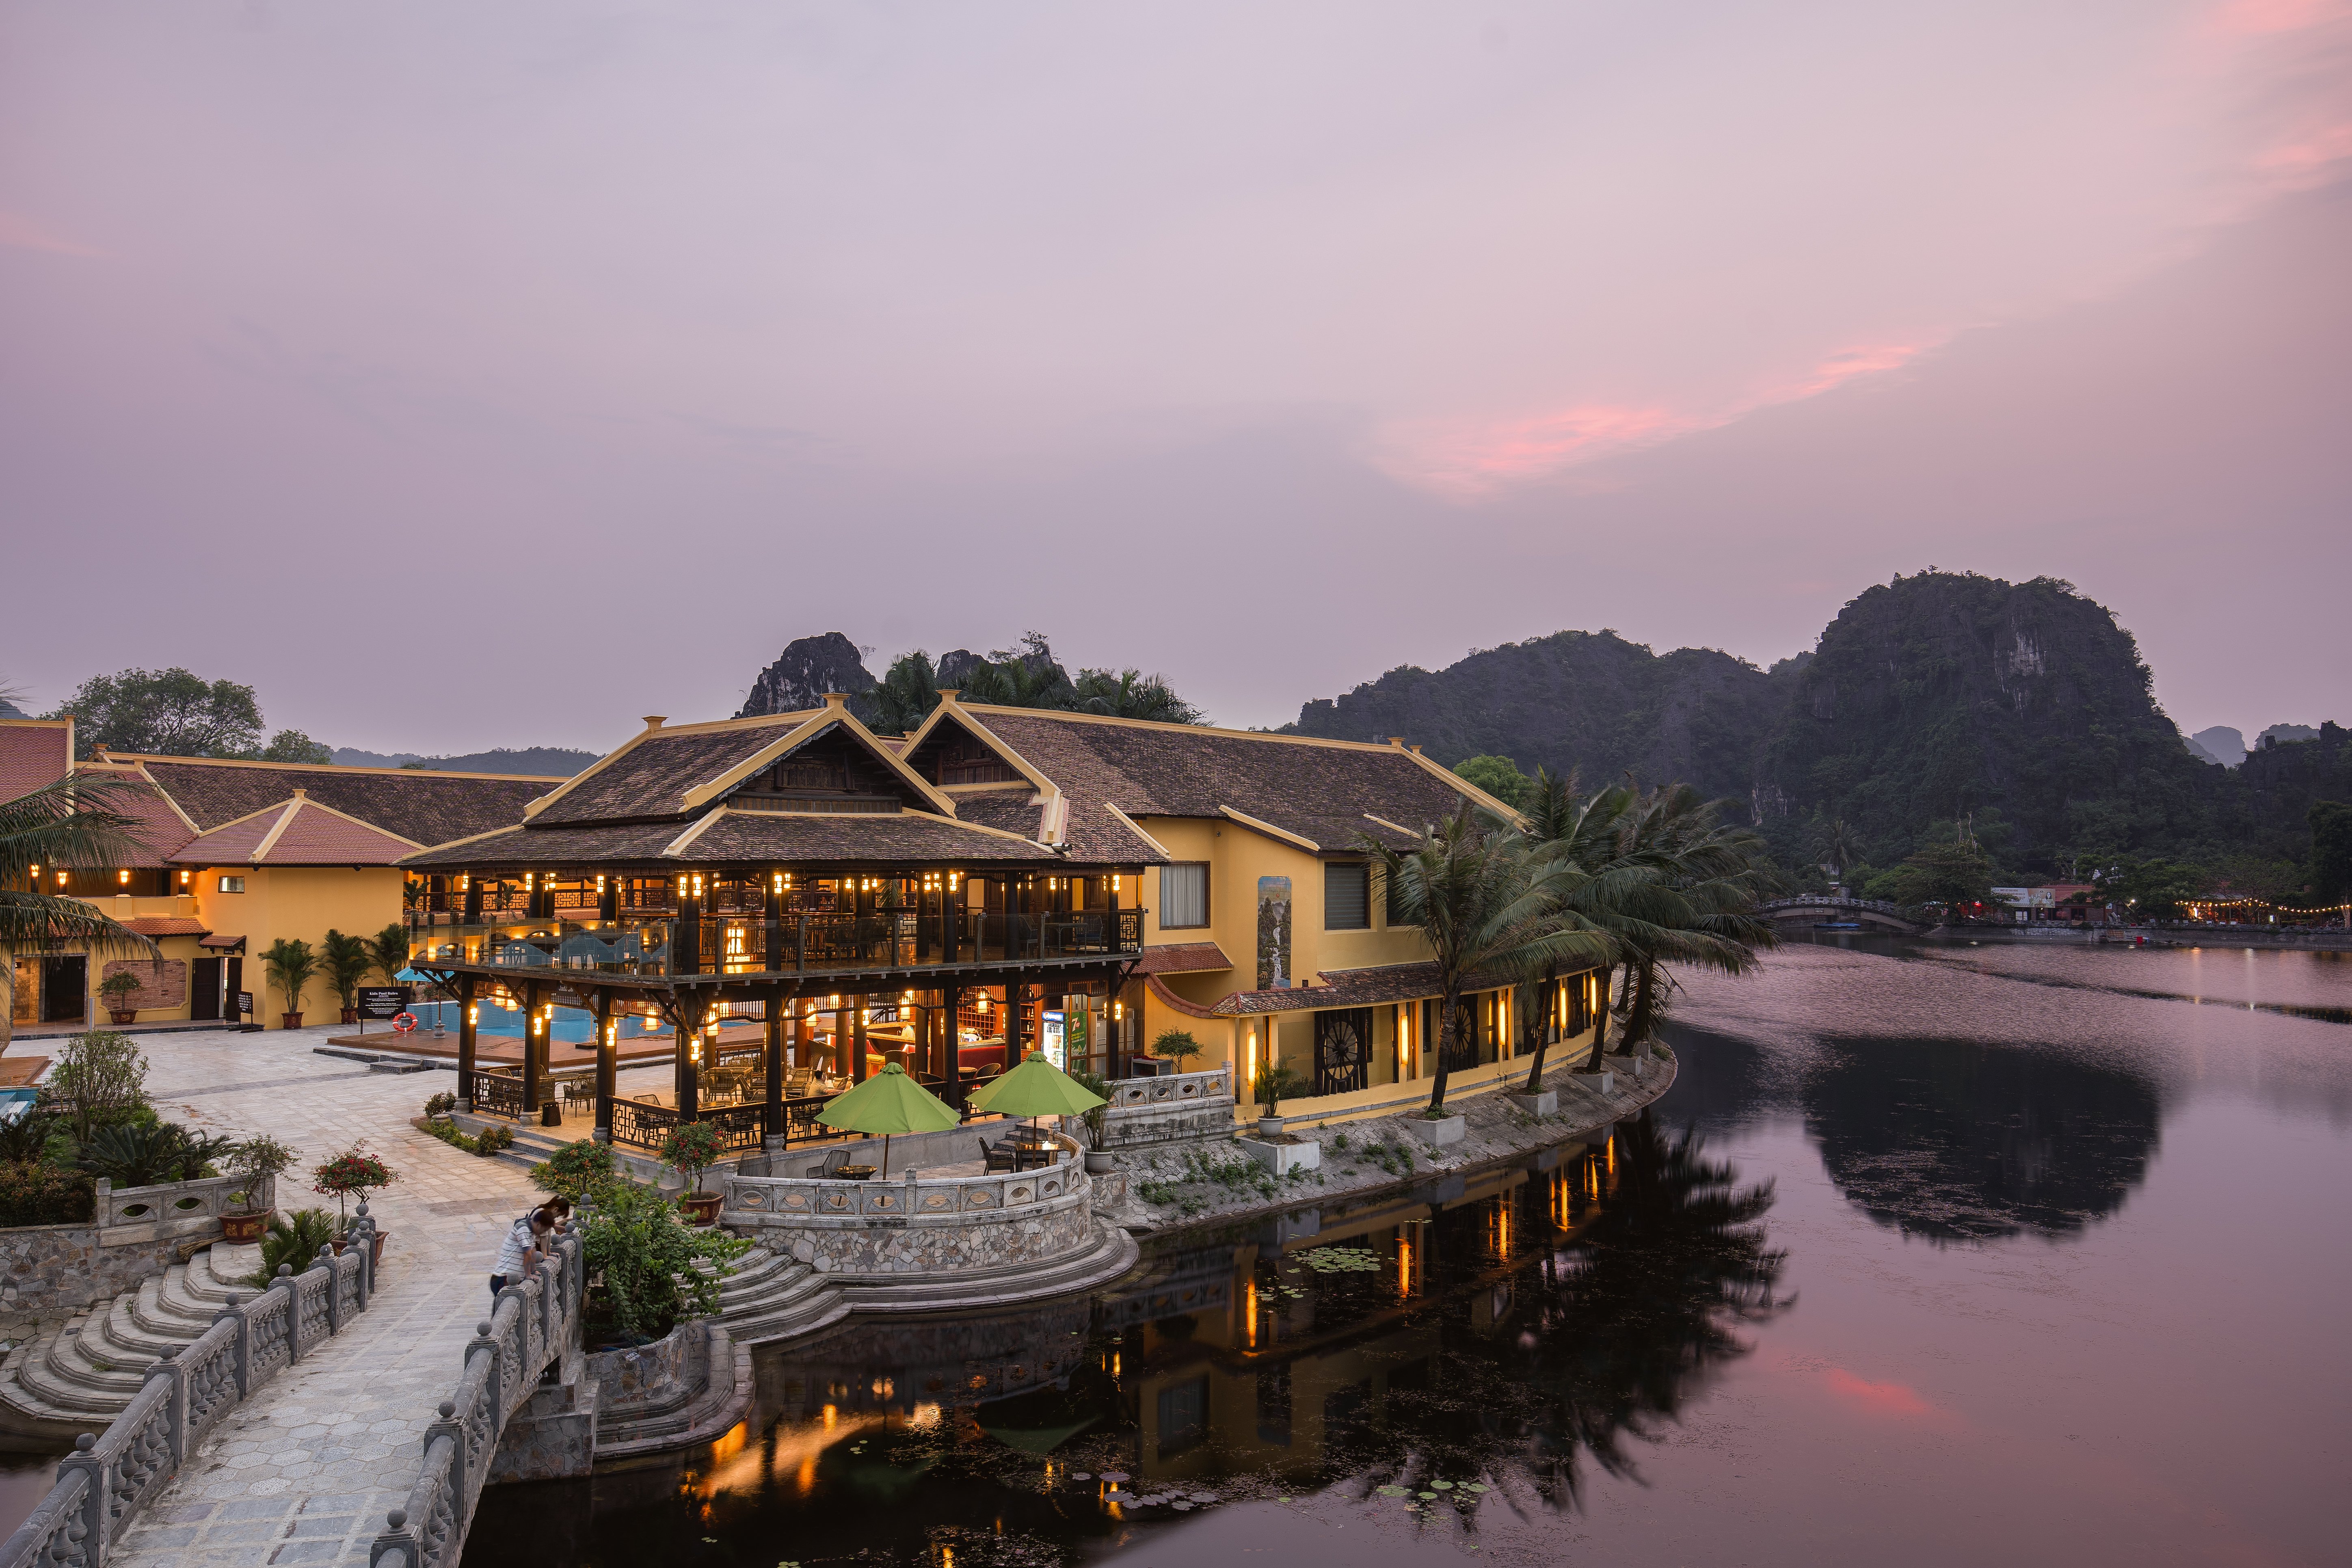 Emeralda Resort Tam Cốc - Điểm đến hoàn hảo cho mùa hè của gia đình